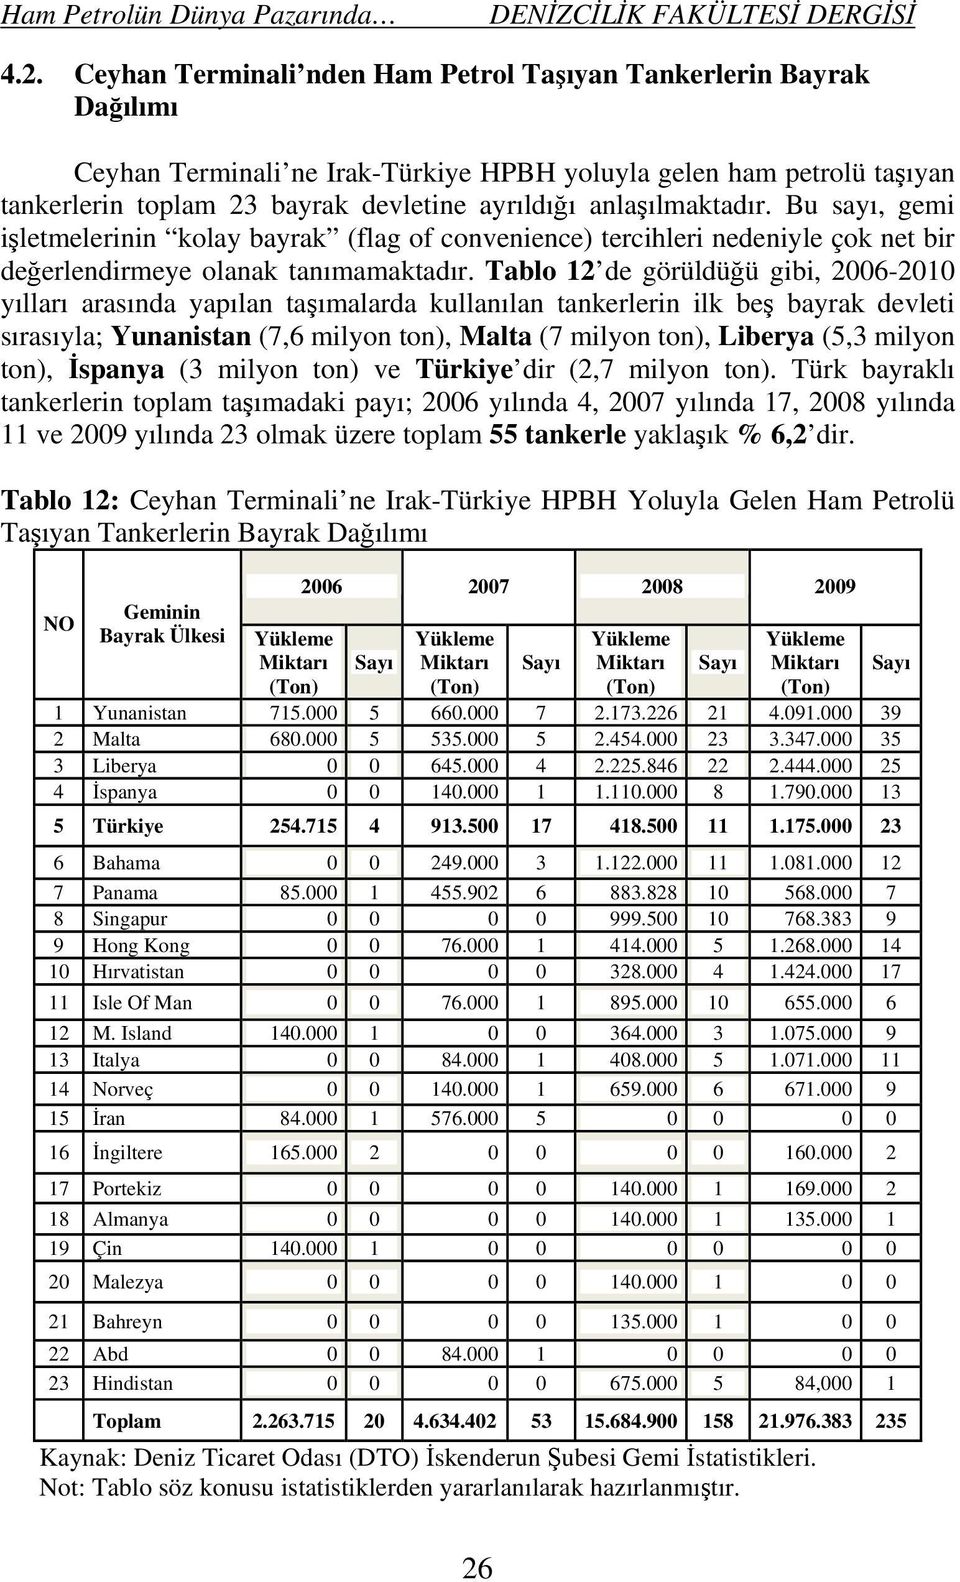 Tablo 12 de görüldüğü gibi, 2006-2010 yılları arasında yapılan taşımalarda kullanılan tankerlerin ilk beş bayrak devleti sırasıyla; Yunanistan (7,6 milyon ton), Malta (7 milyon ton), Liberya (5,3